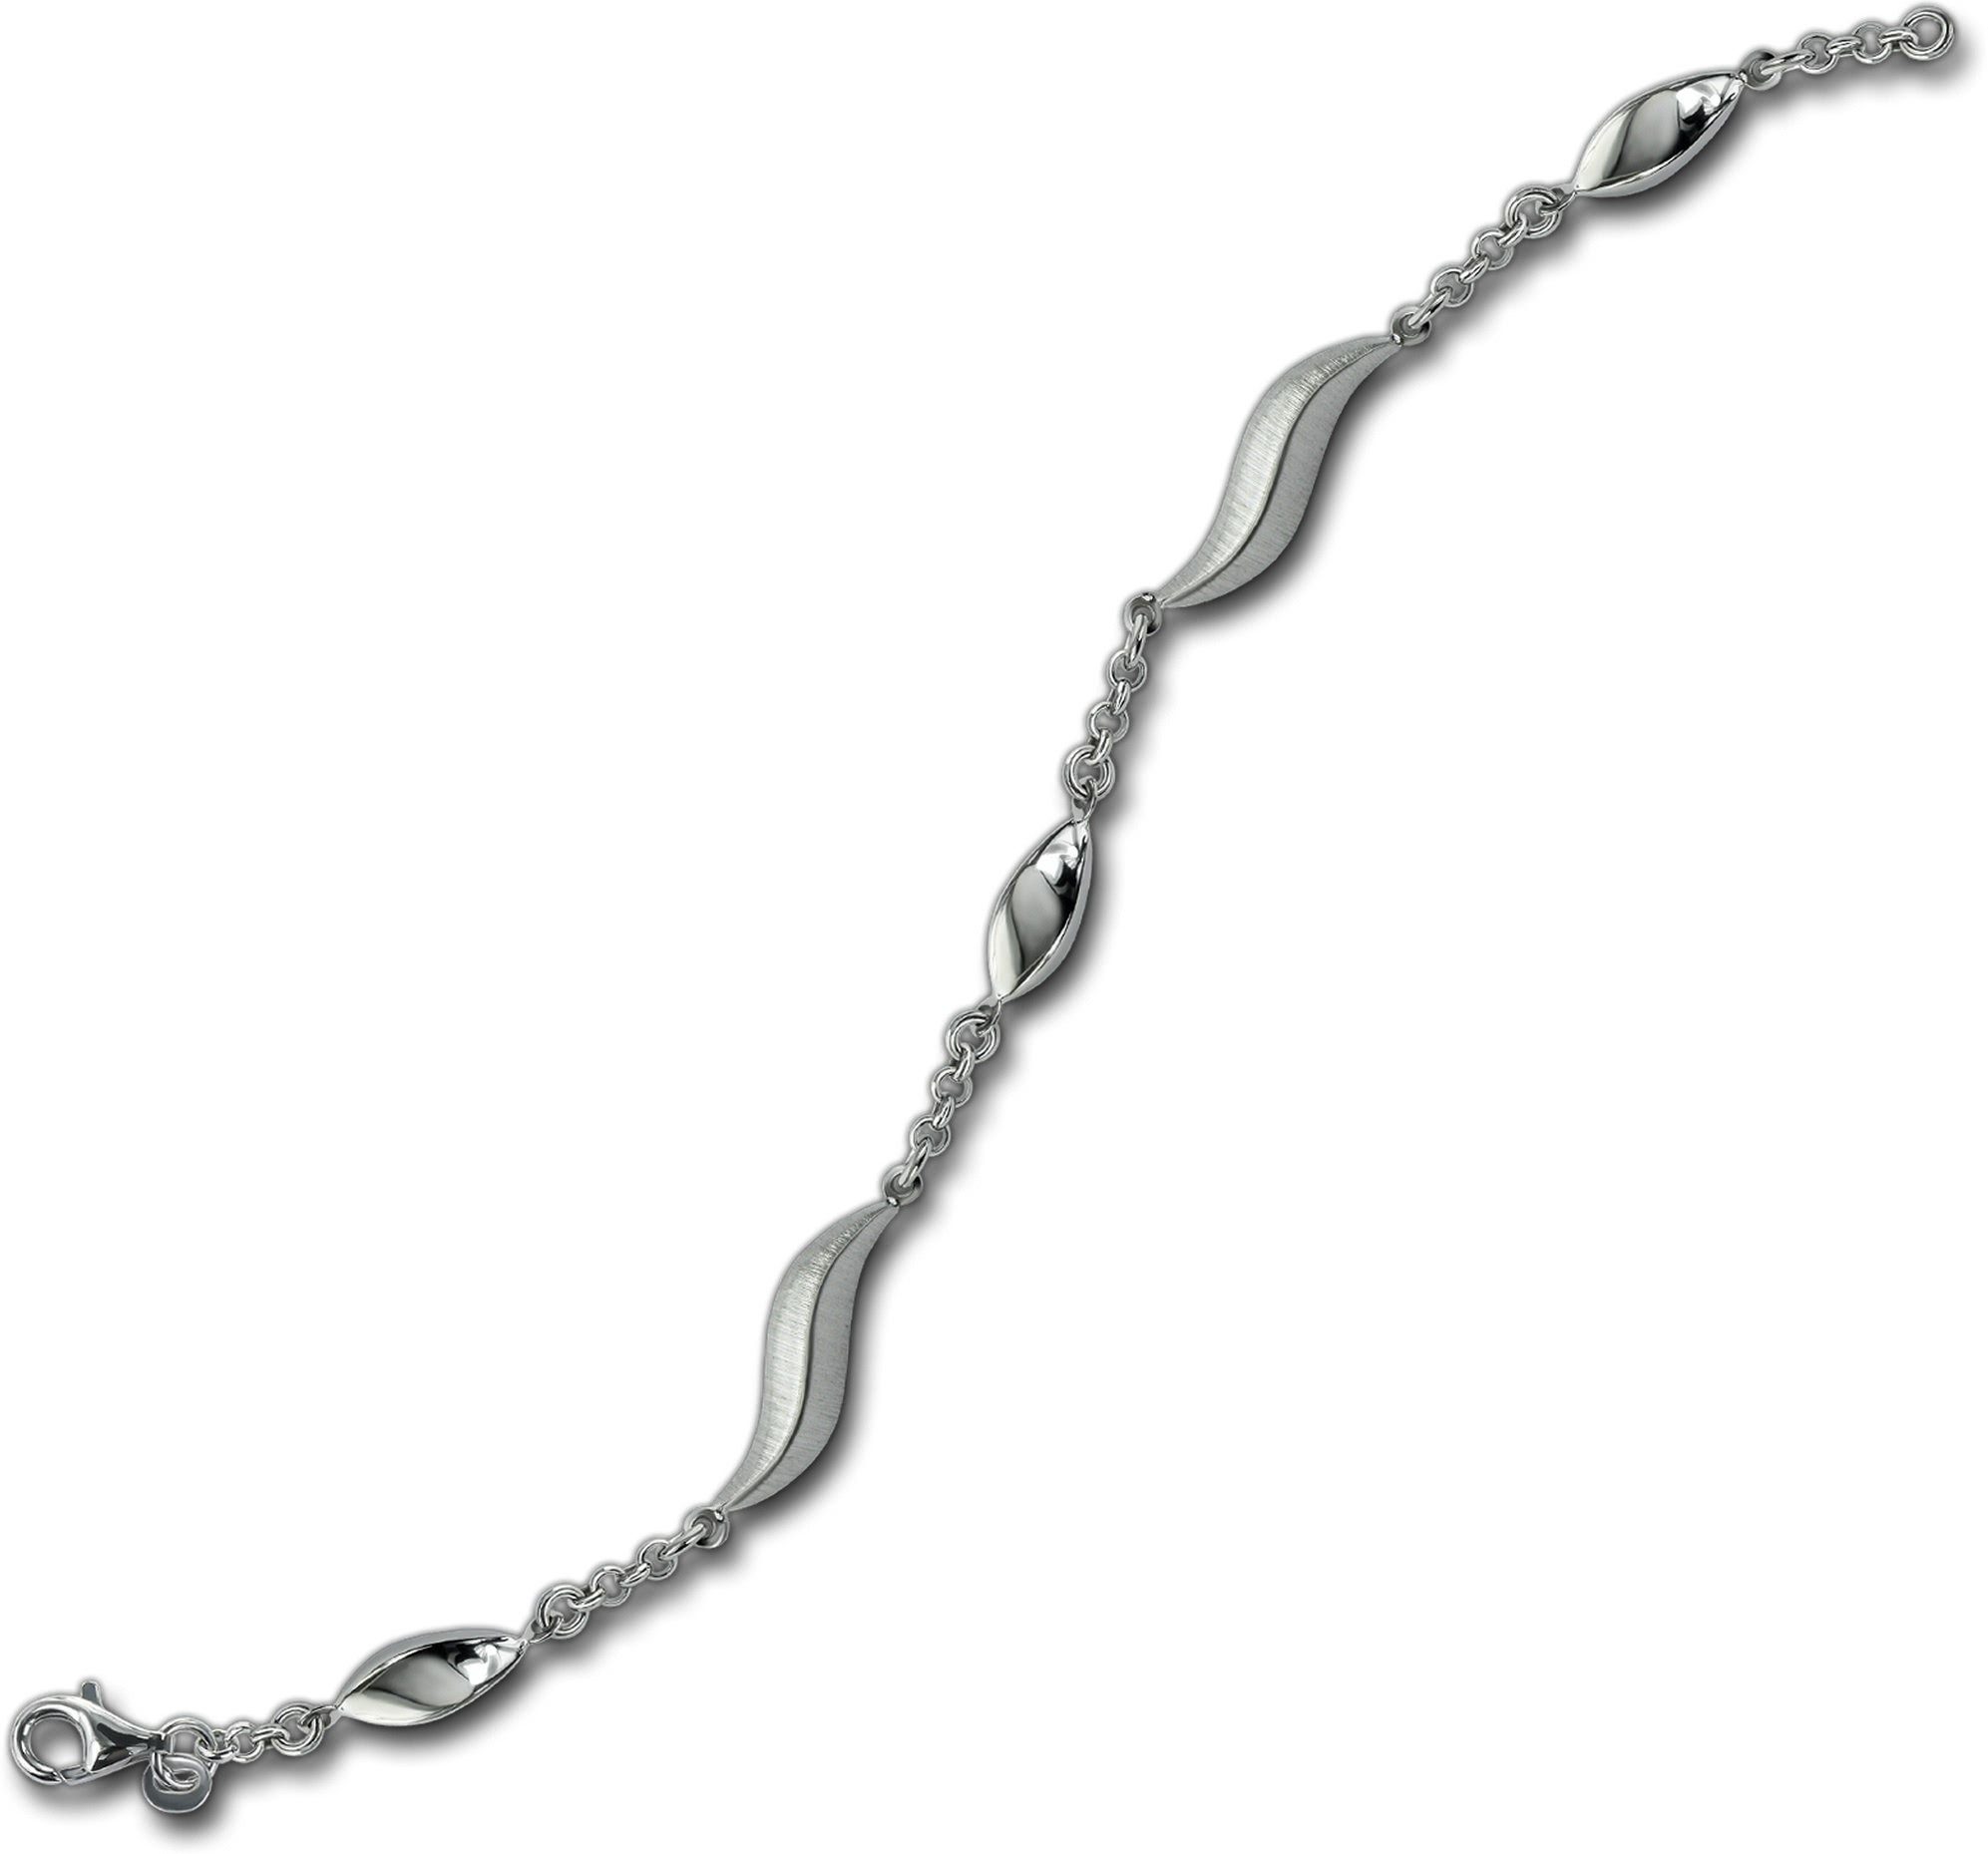 Balia Silberarmband Balia Armband (Wave) (Armband), ca. Armband 925 Silber 19,5cm, Damen für mattiert Silber